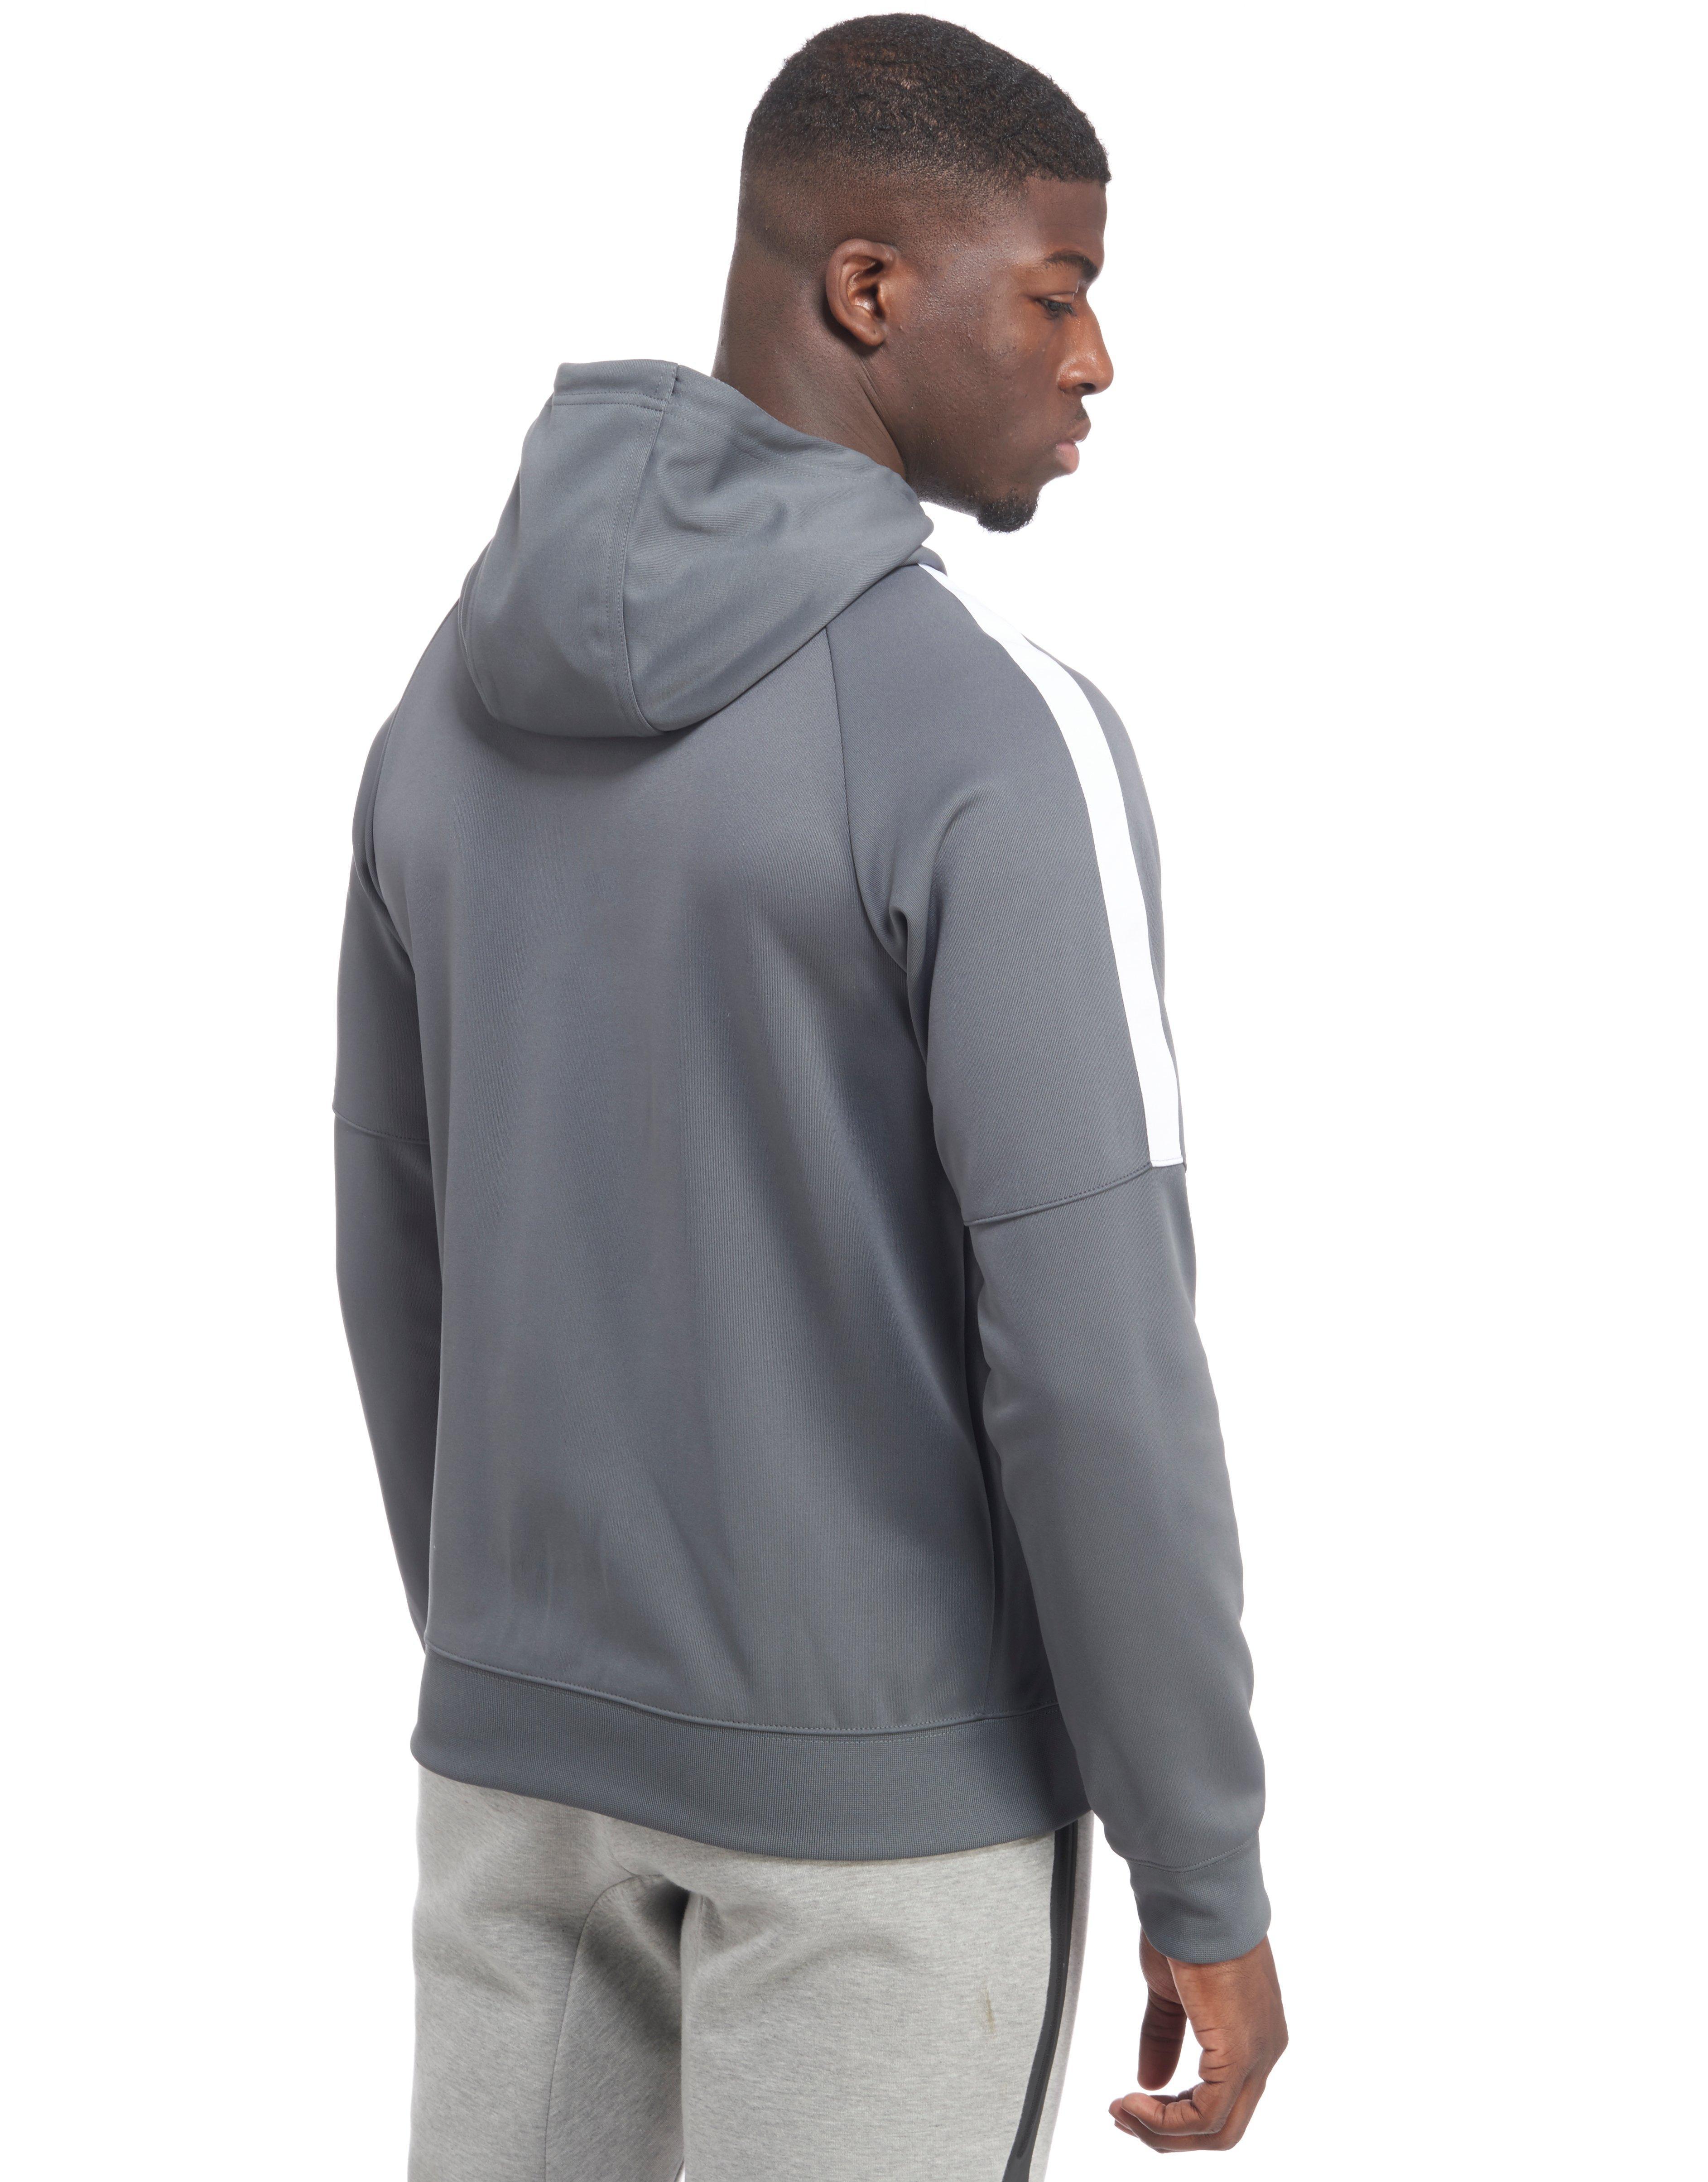 grey nike tribute hoodie, Off 63%, cedpackaging.net